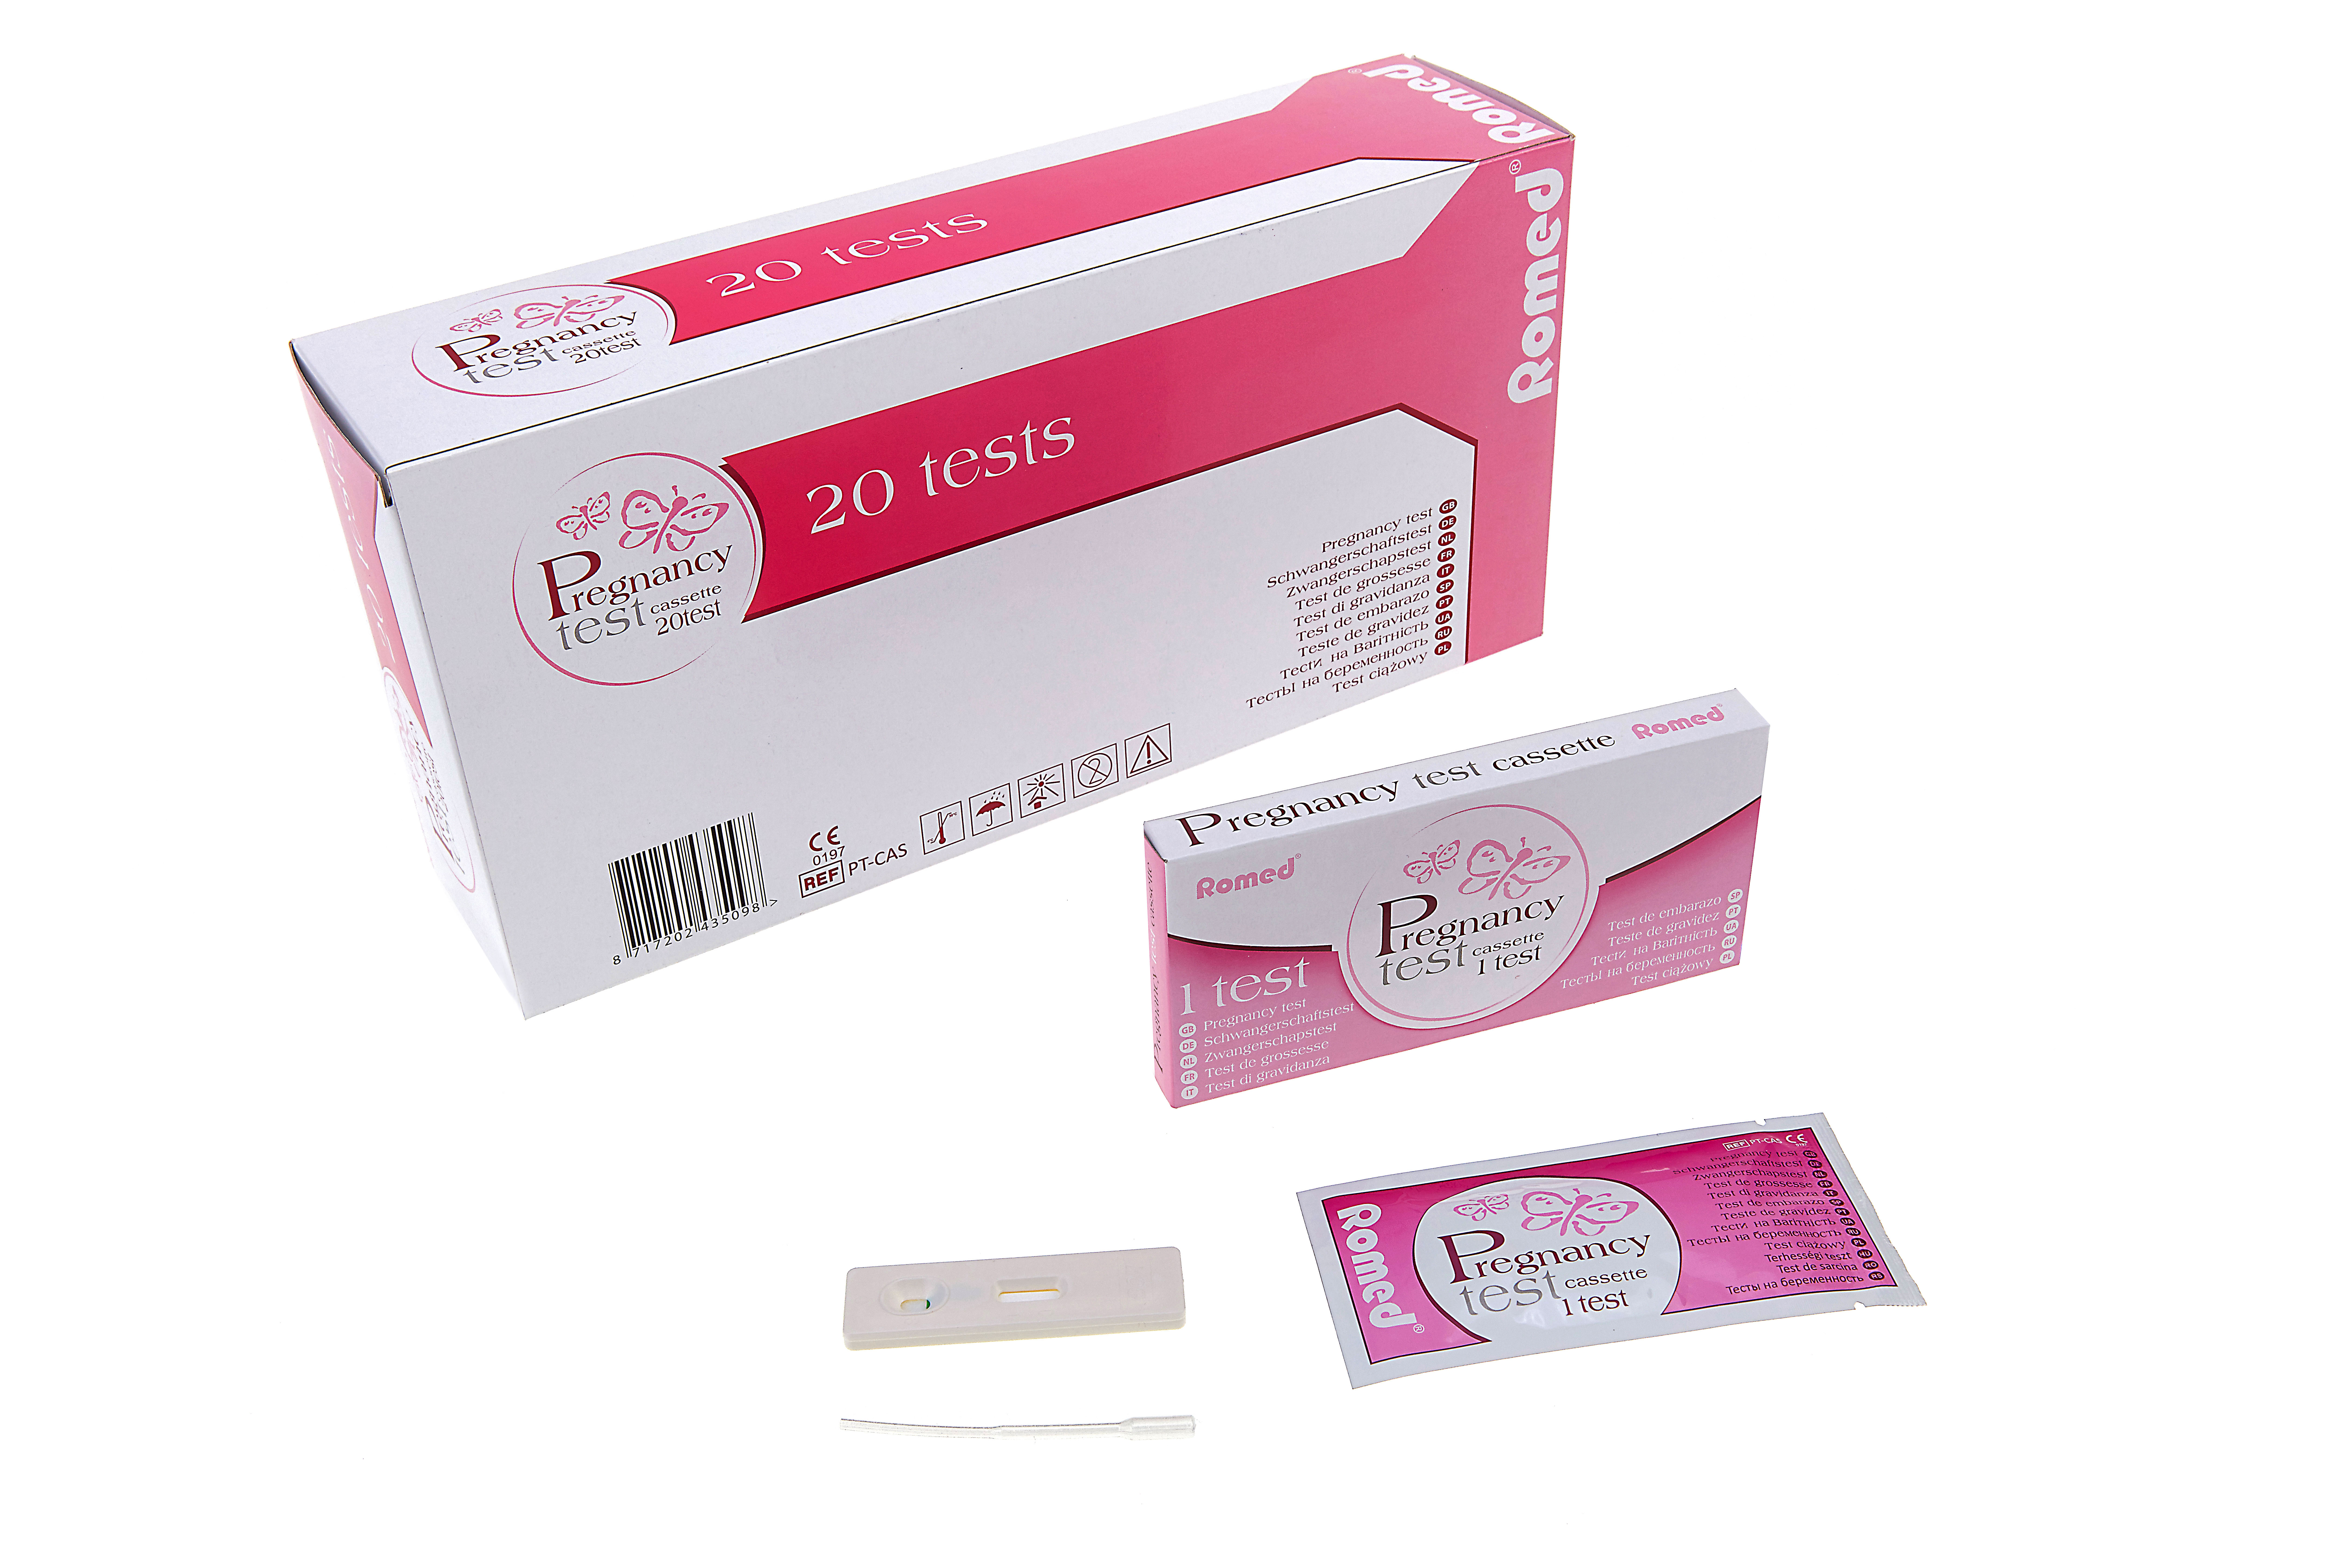 PT-CAS Romed zwangerschapstesten, cassette type, verpakt per stuk in een doosje, per 20 stuks in een binnendoosje, 25 x 20 stuks = 500 stuks in een karton.